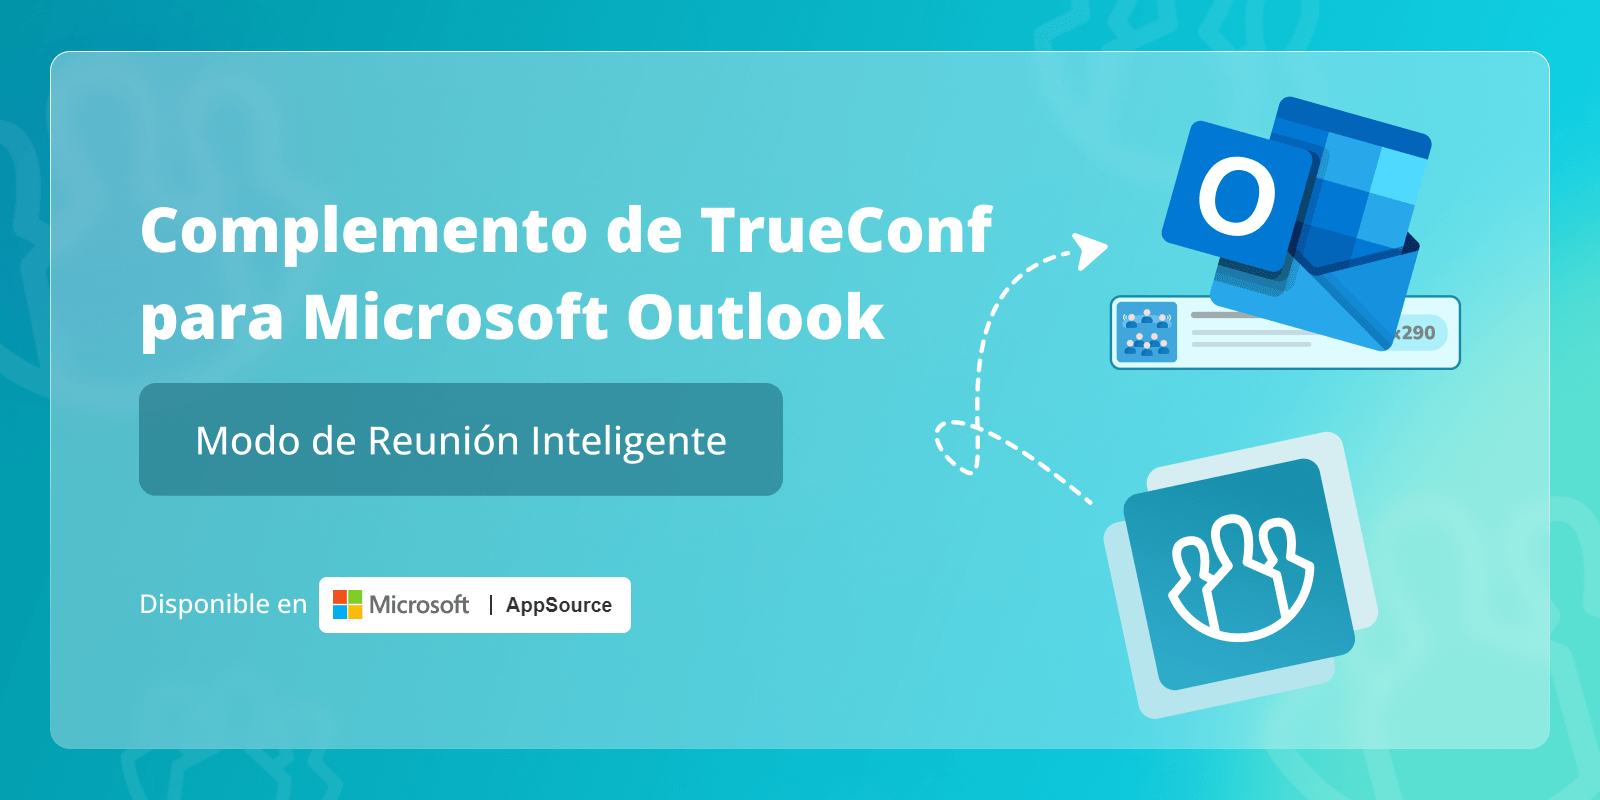 Modo de reunión inteligente en TrueConf para el complemento de Microsoft Outlook 5